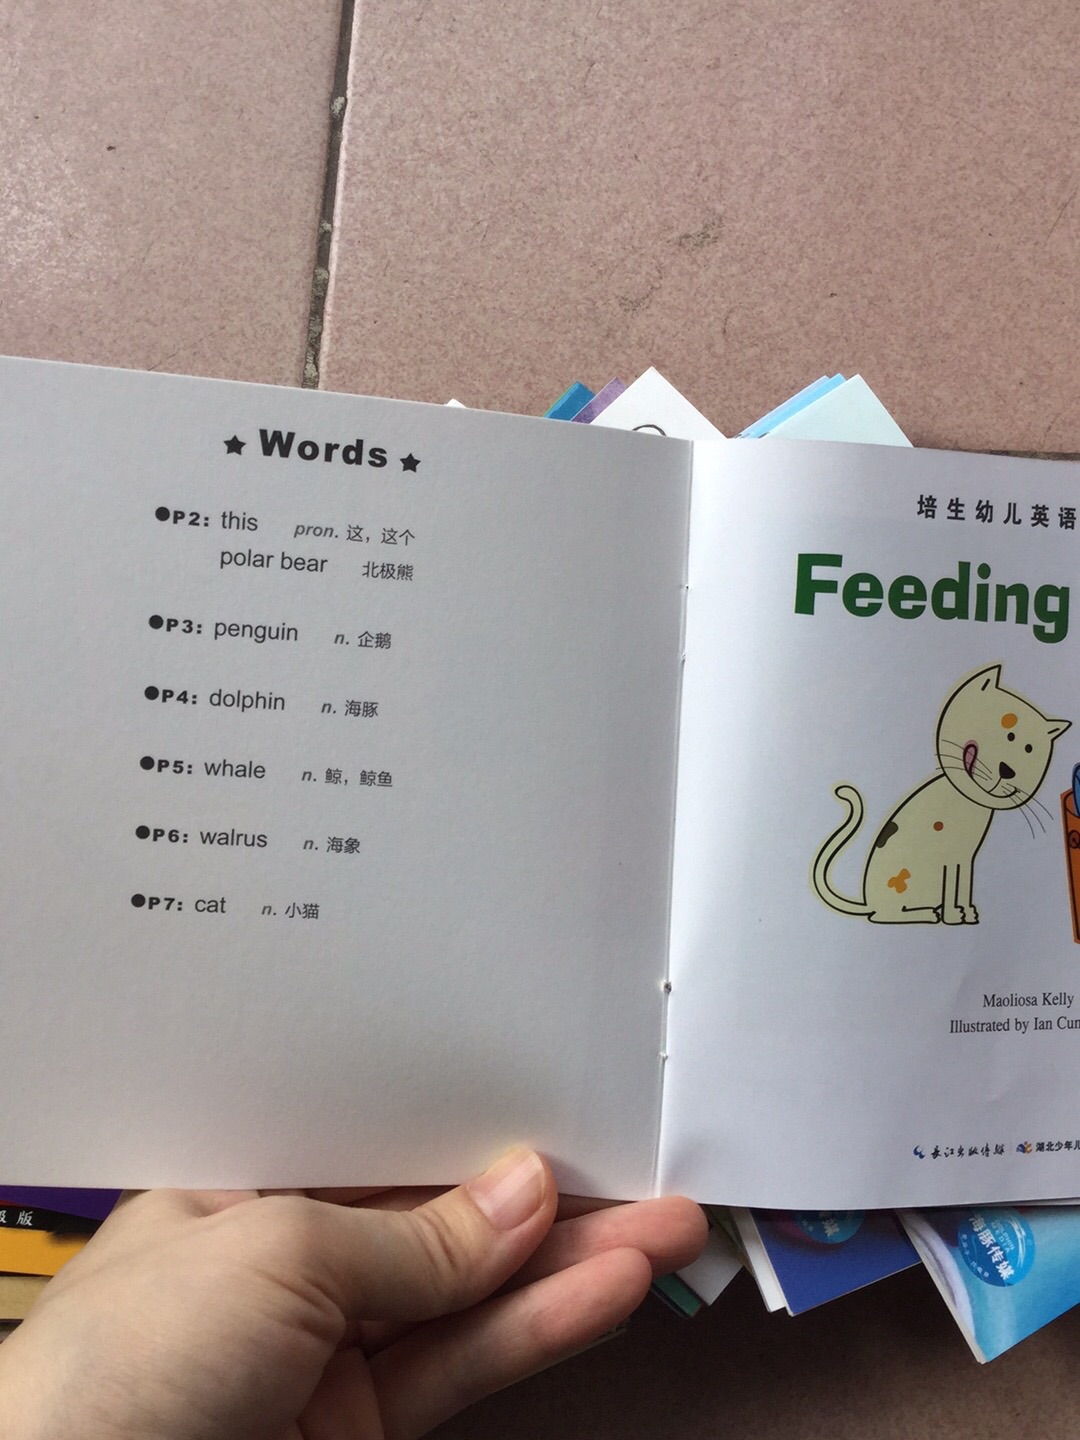 网红推荐所以买来给宝贝学习，每本有8一10个单词。故事情节简单比适应幼儿。扫码有声对于英语渣来说真的很好用。